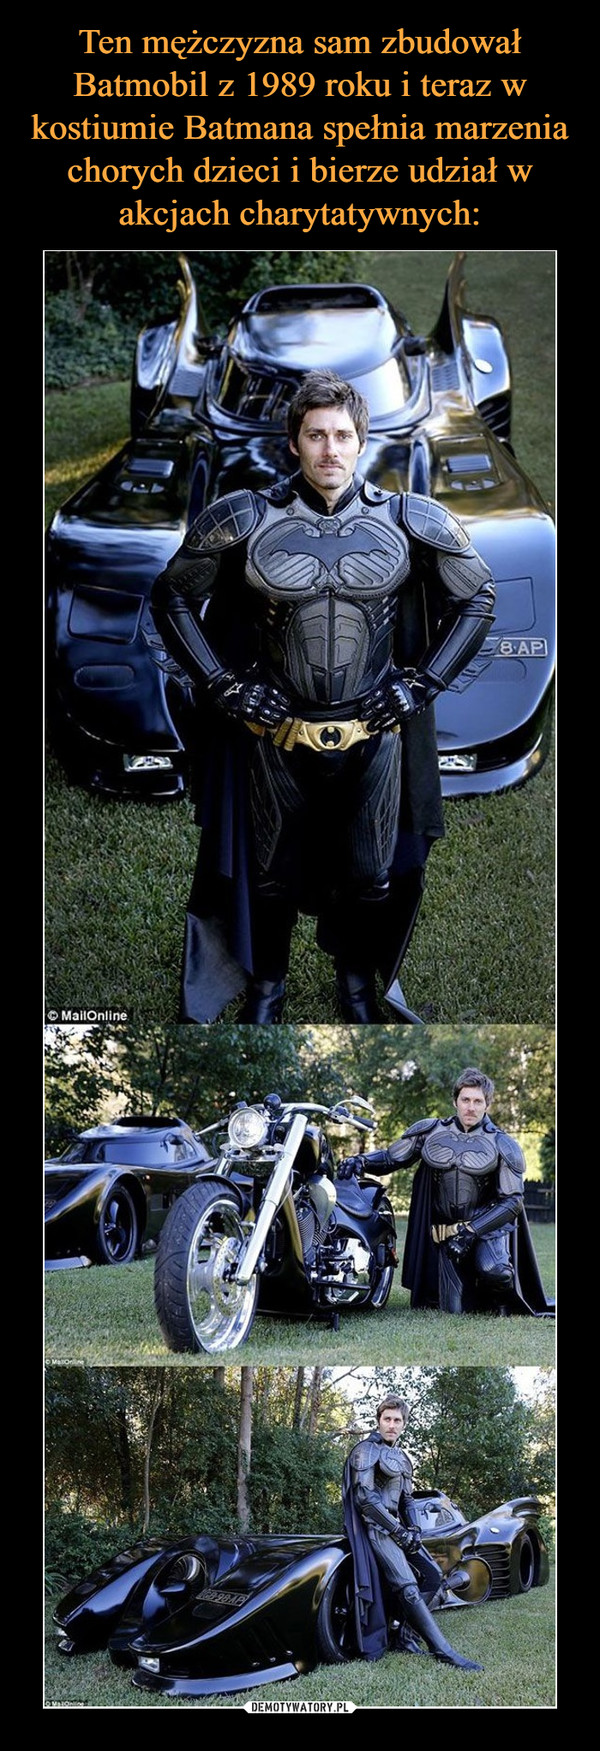 Ten mężczyzna sam zbudował Batmobil z 1989 roku i teraz w kostiumie Batmana spełnia marzenia chorych dzieci i bierze udział w akcjach charytatywnych: